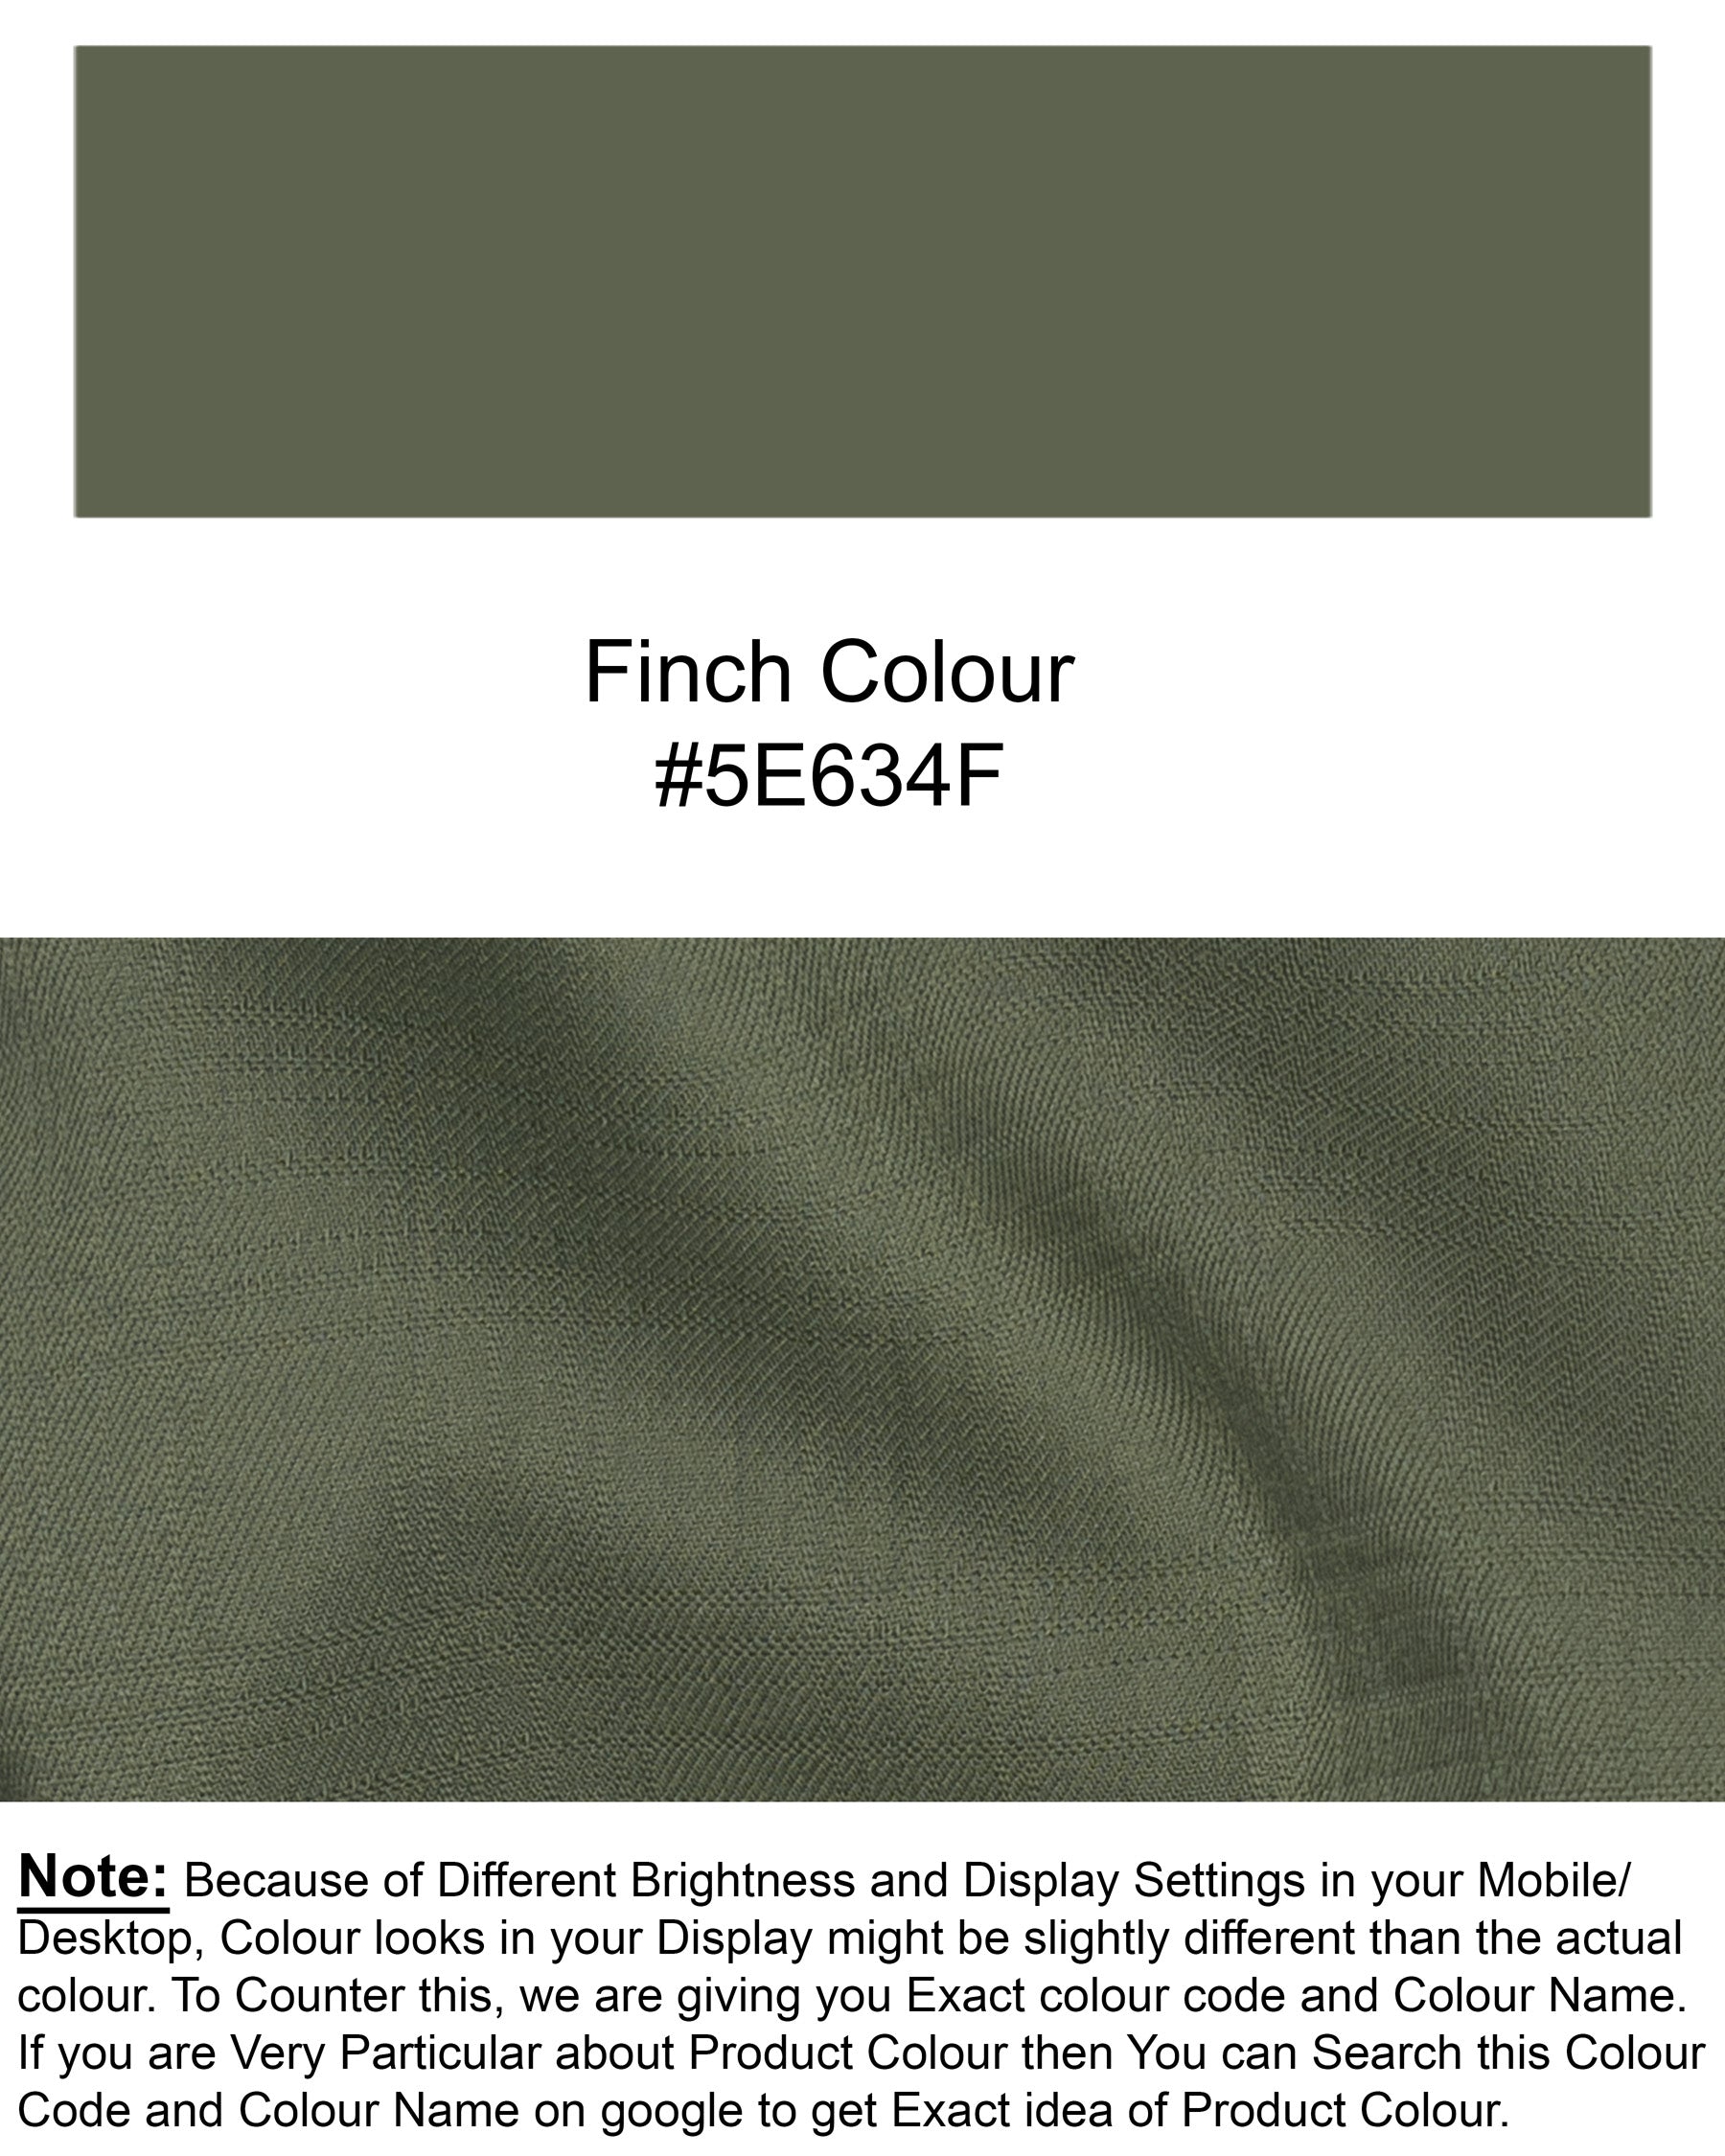 Finch Green Wool Rich Tuxedo Suit ST1352-BKL-36, ST1352-BKL-38, ST1352-BKL-40, ST1352-BKL-42, ST1352-BKL-44, ST1352-BKL-46, ST1352-BKL-48, ST1352-BKL-50, ST1352-BKL-52, ST1352-BKL-54, ST1352-BKL-56, ST1352-BKL-58, ST1352-BKL-60